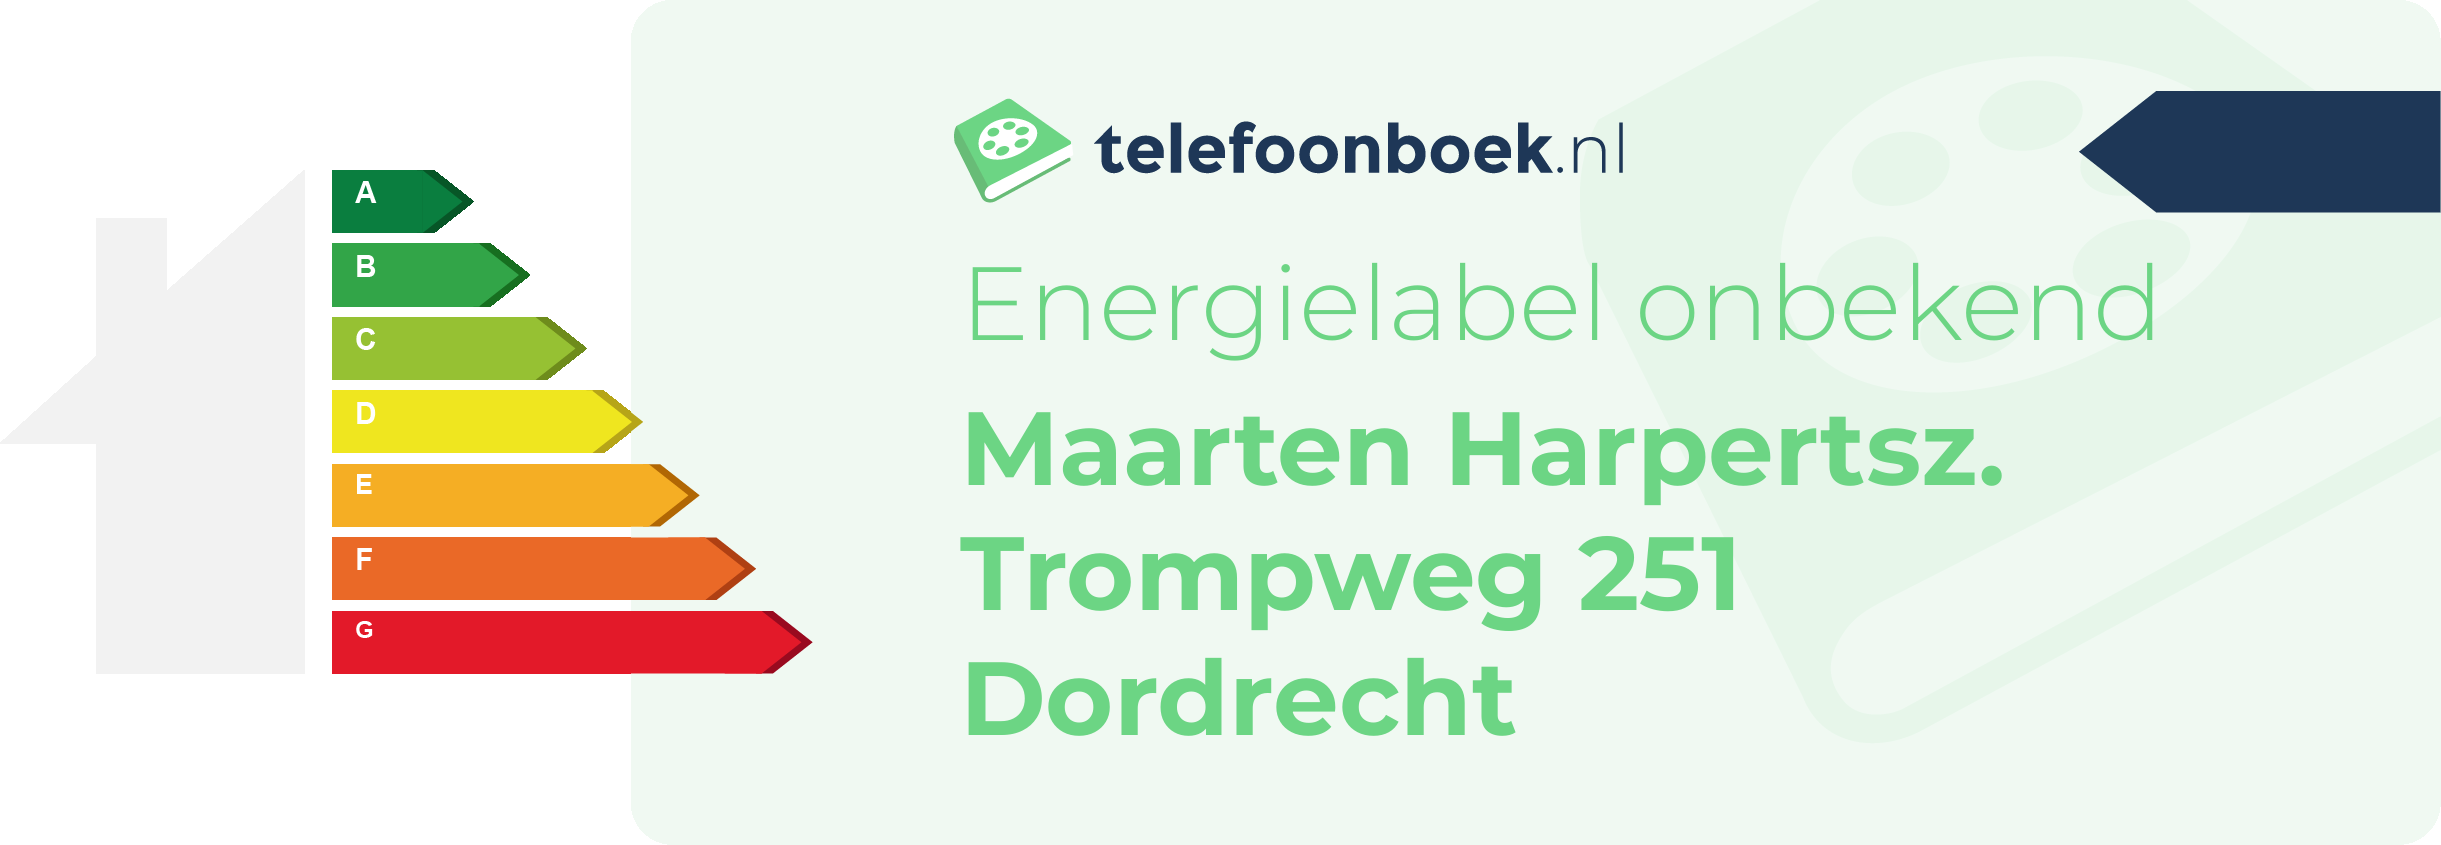 Energielabel Maarten Harpertsz. Trompweg 251 Dordrecht